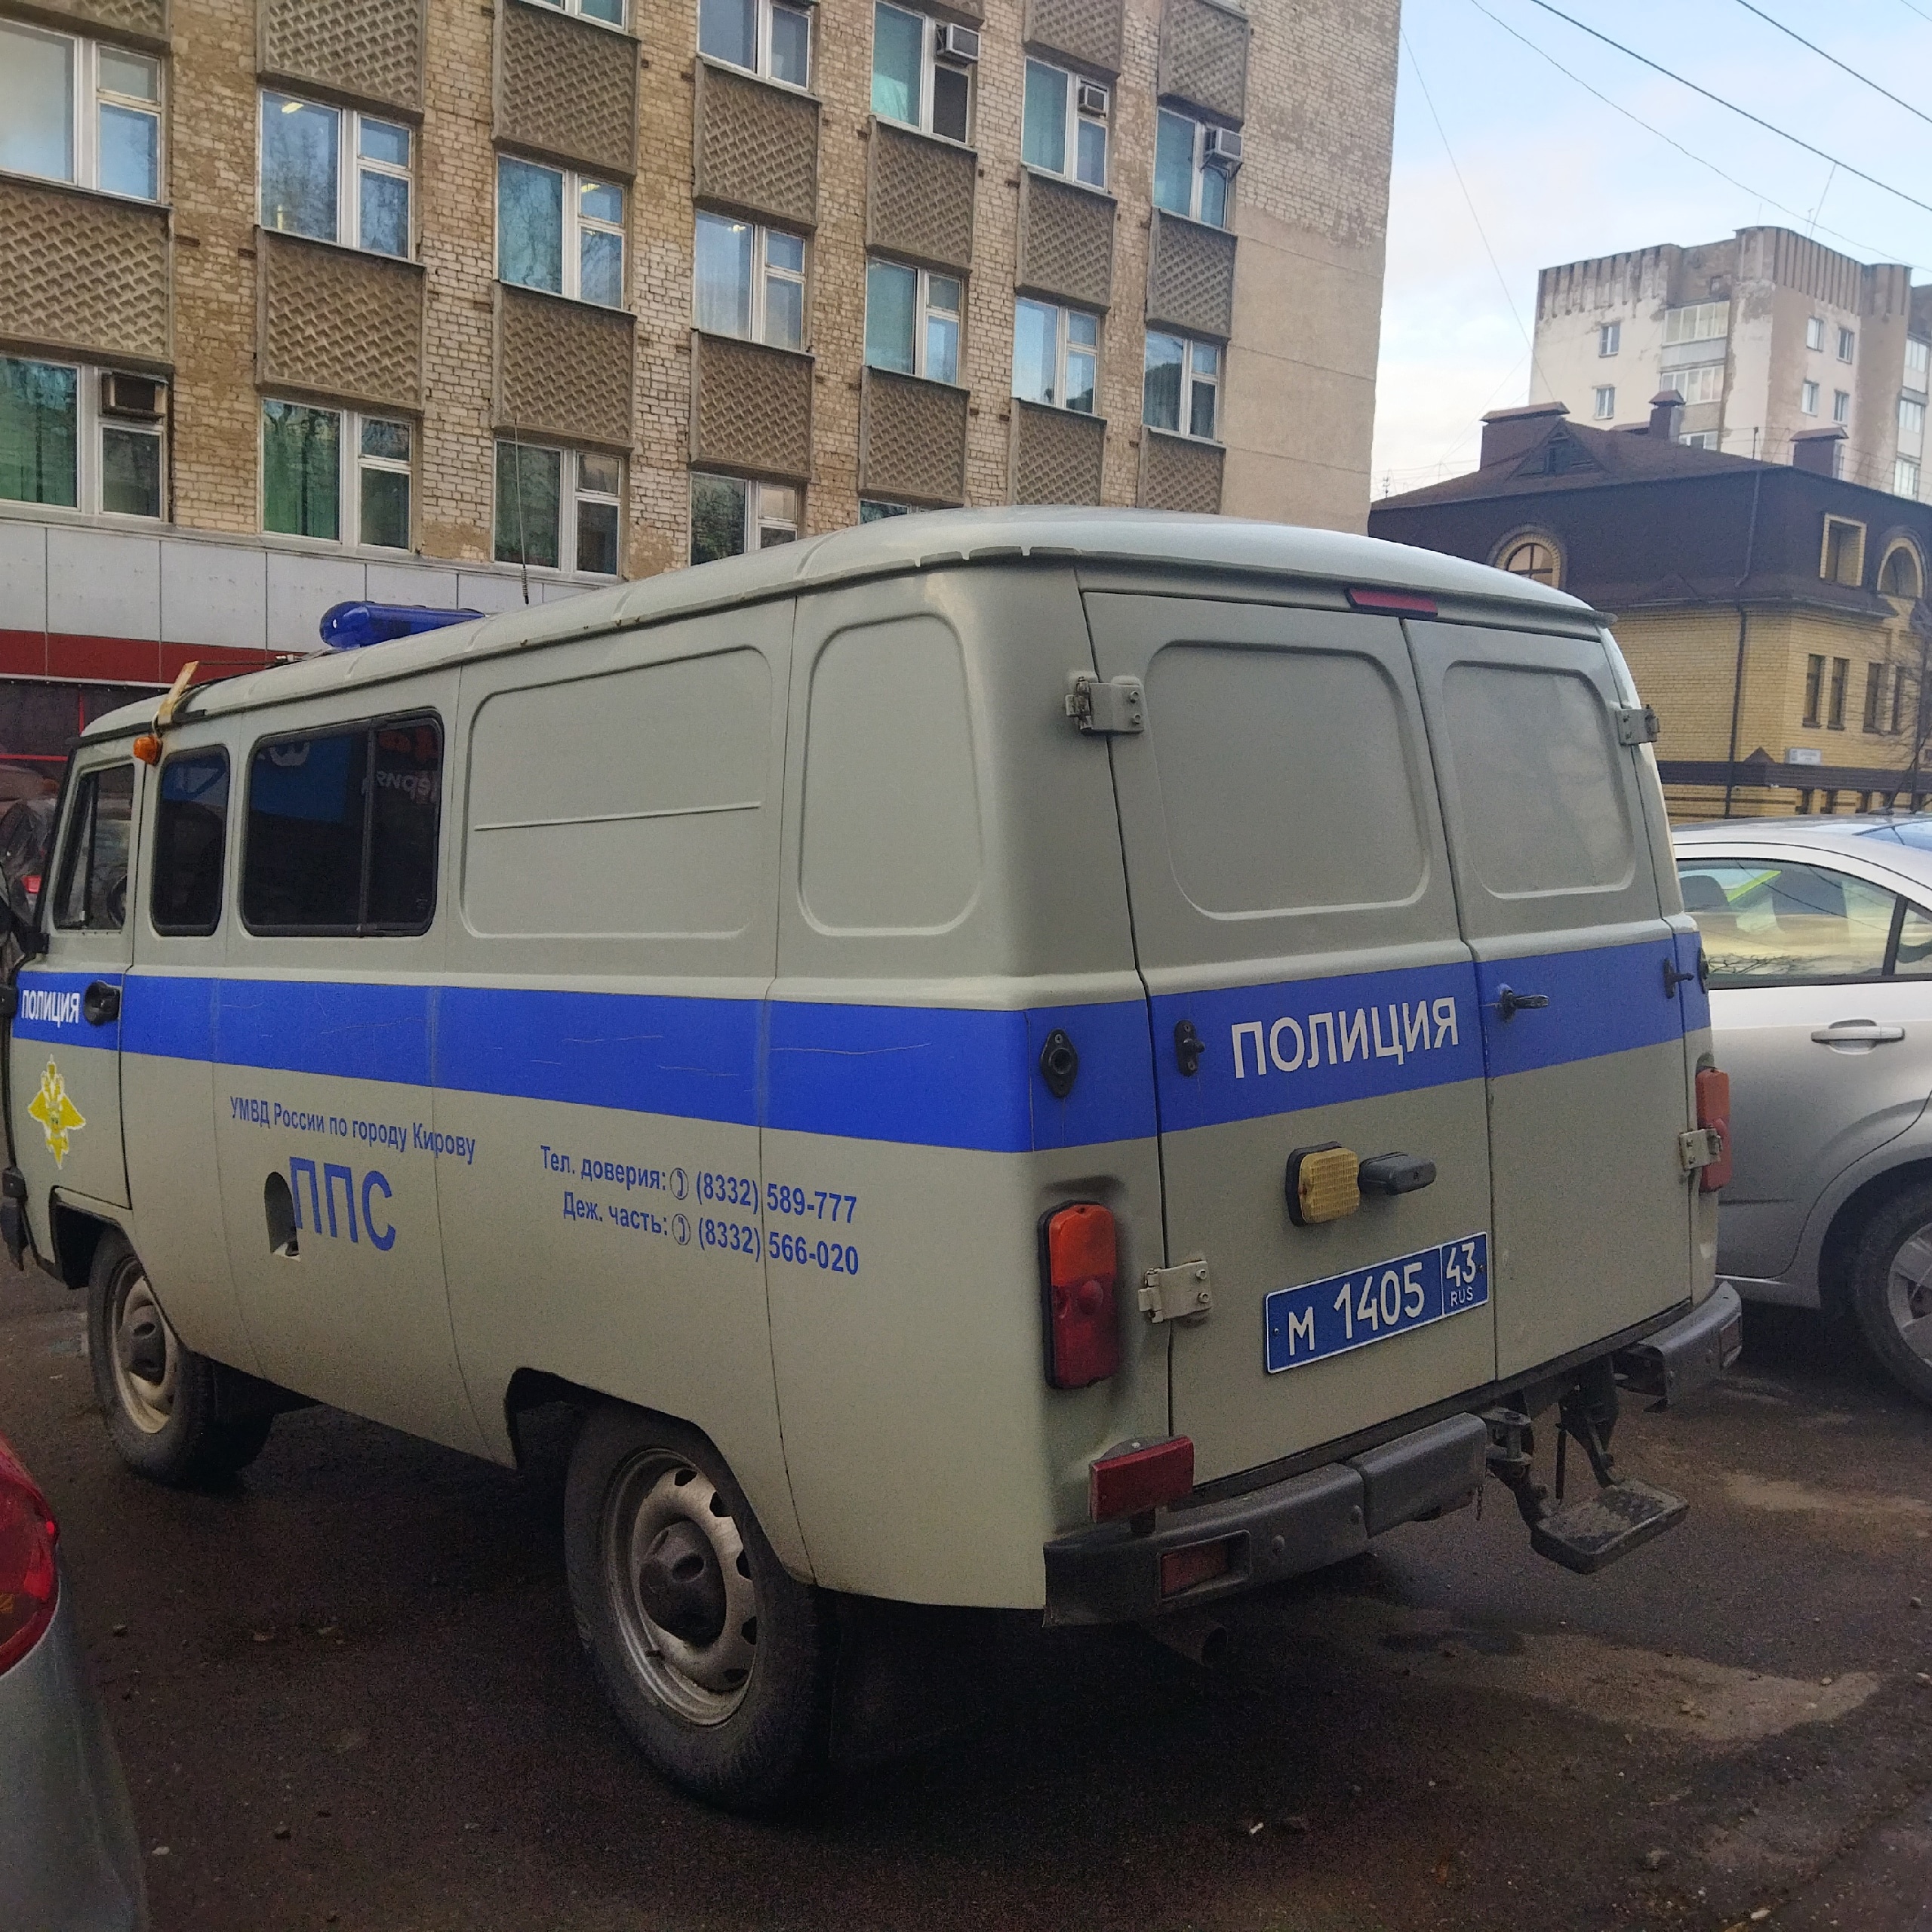 Сотрудники полиции нашли без вести пропавшего ребенка в Нововятске